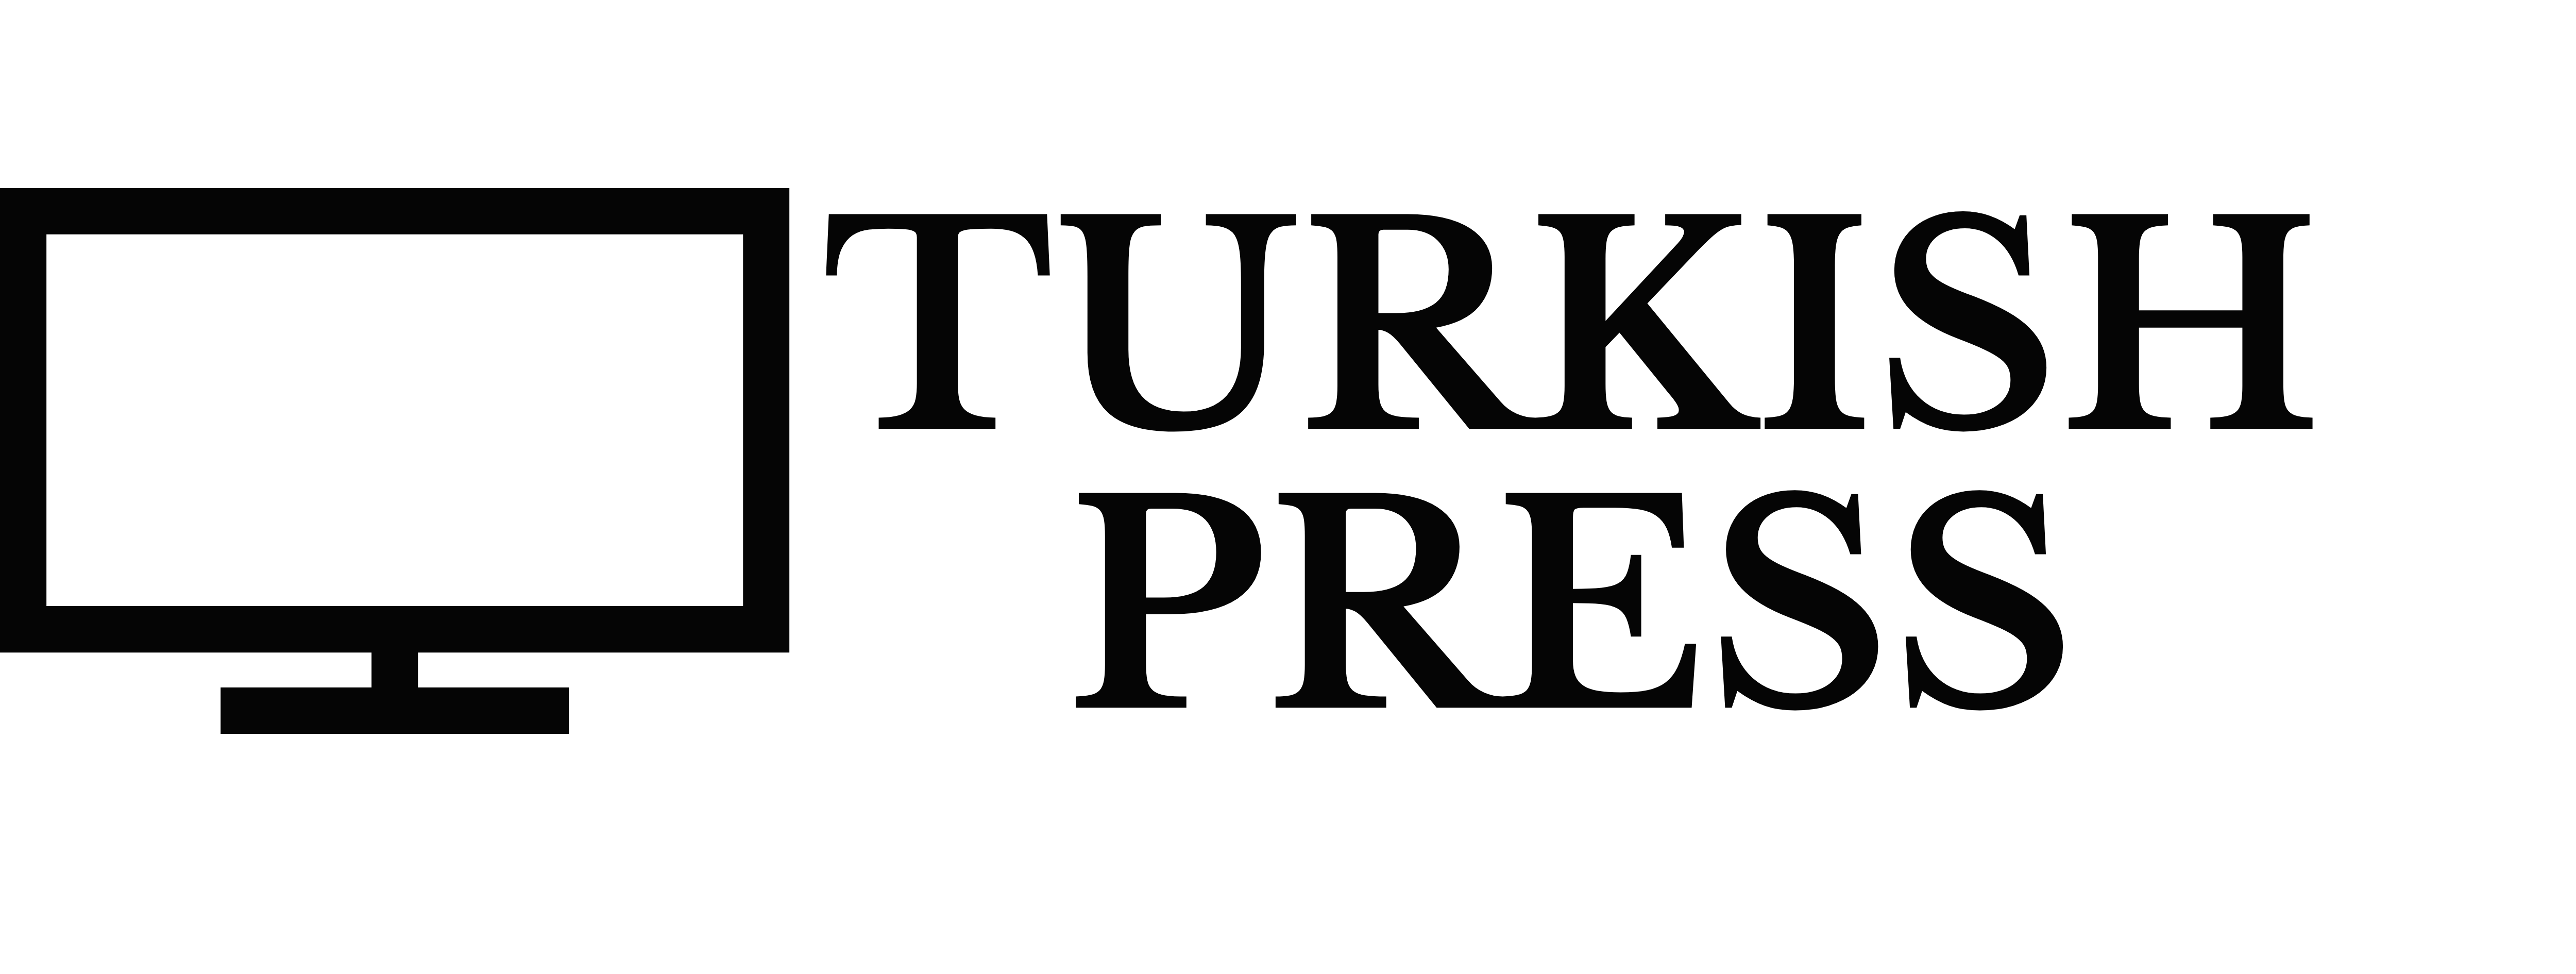 Turkish Press News